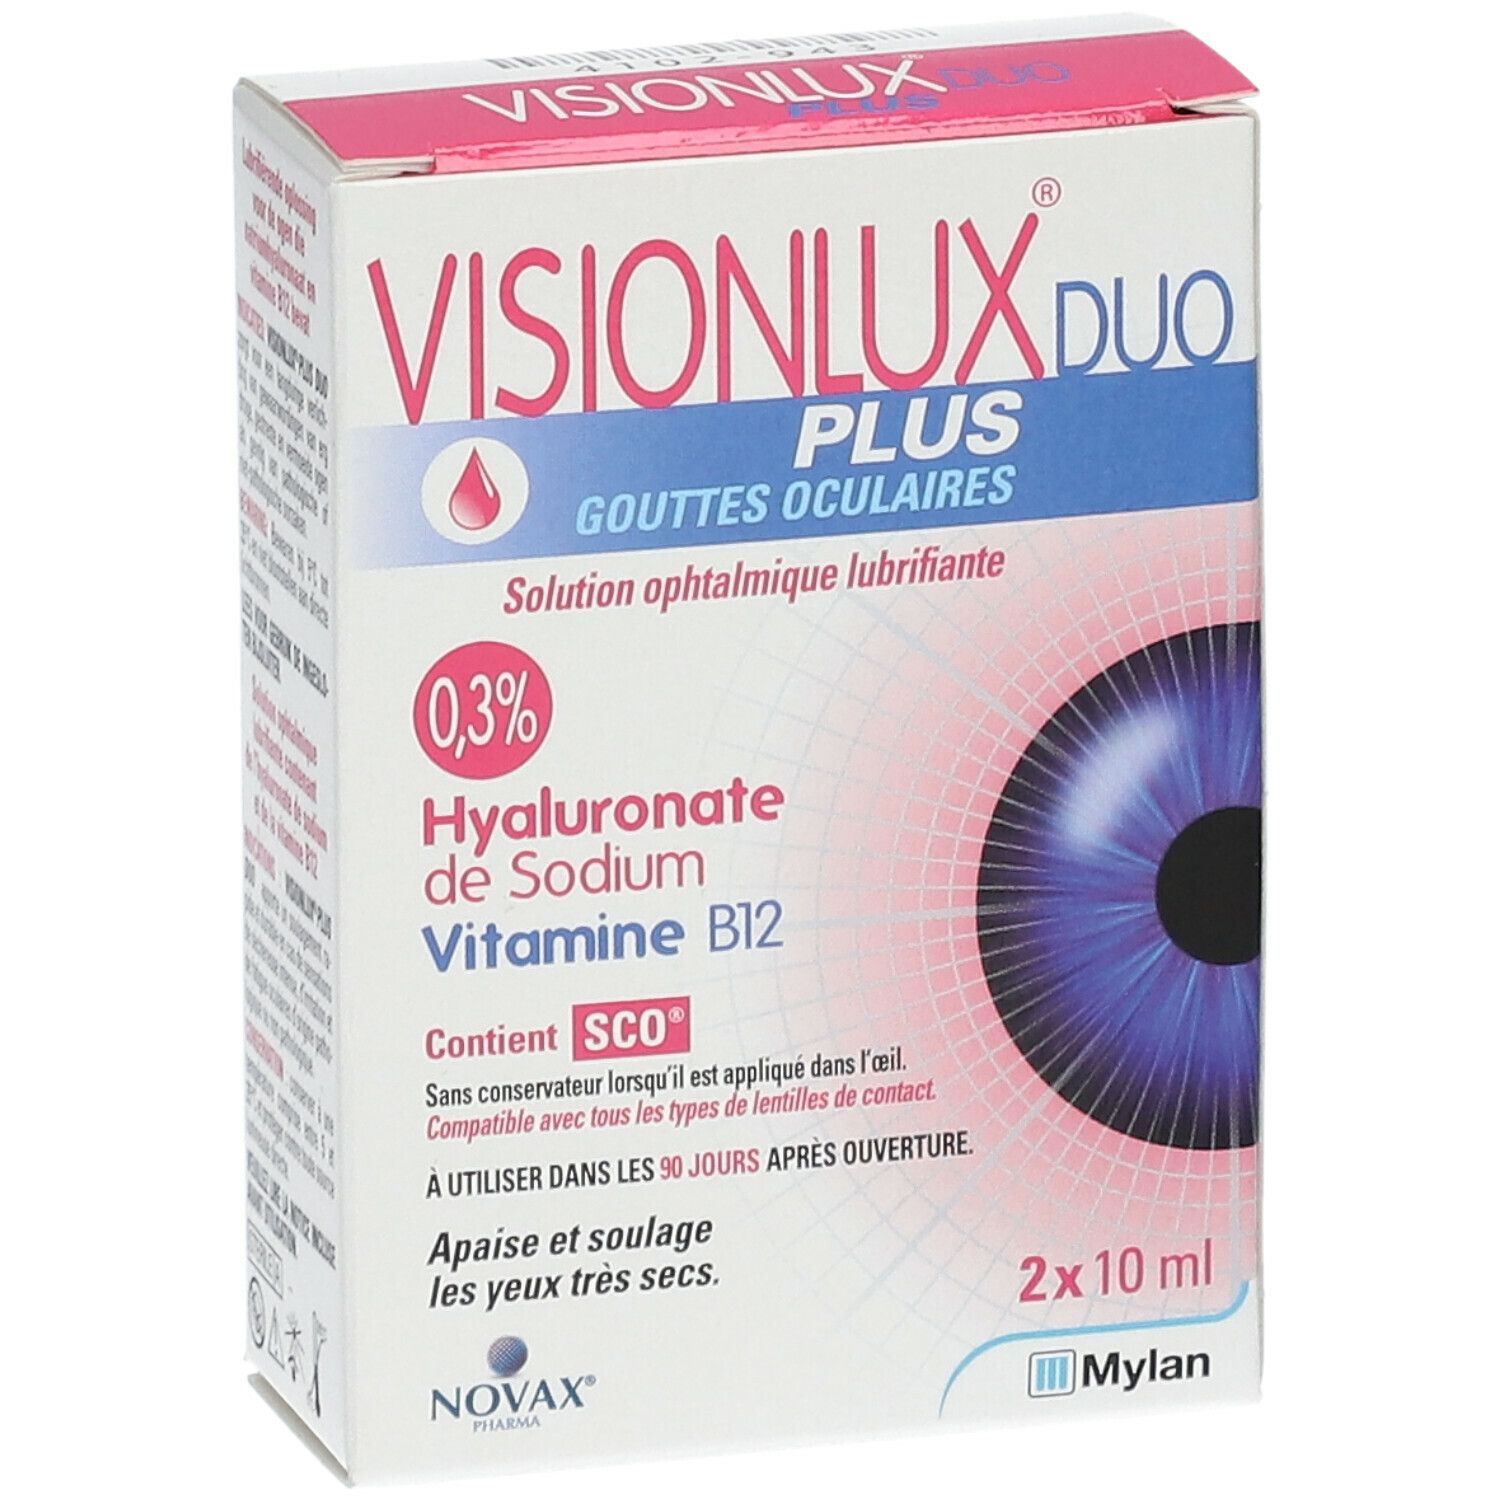 Visionlux Plus DUO